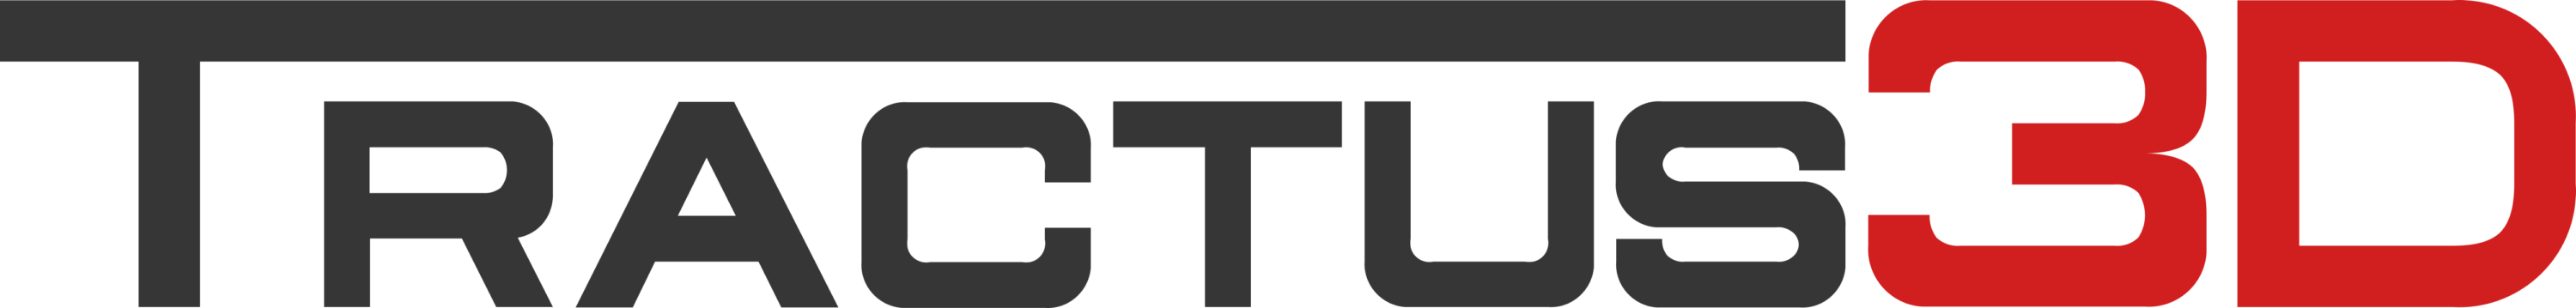 Tractus3D Logo